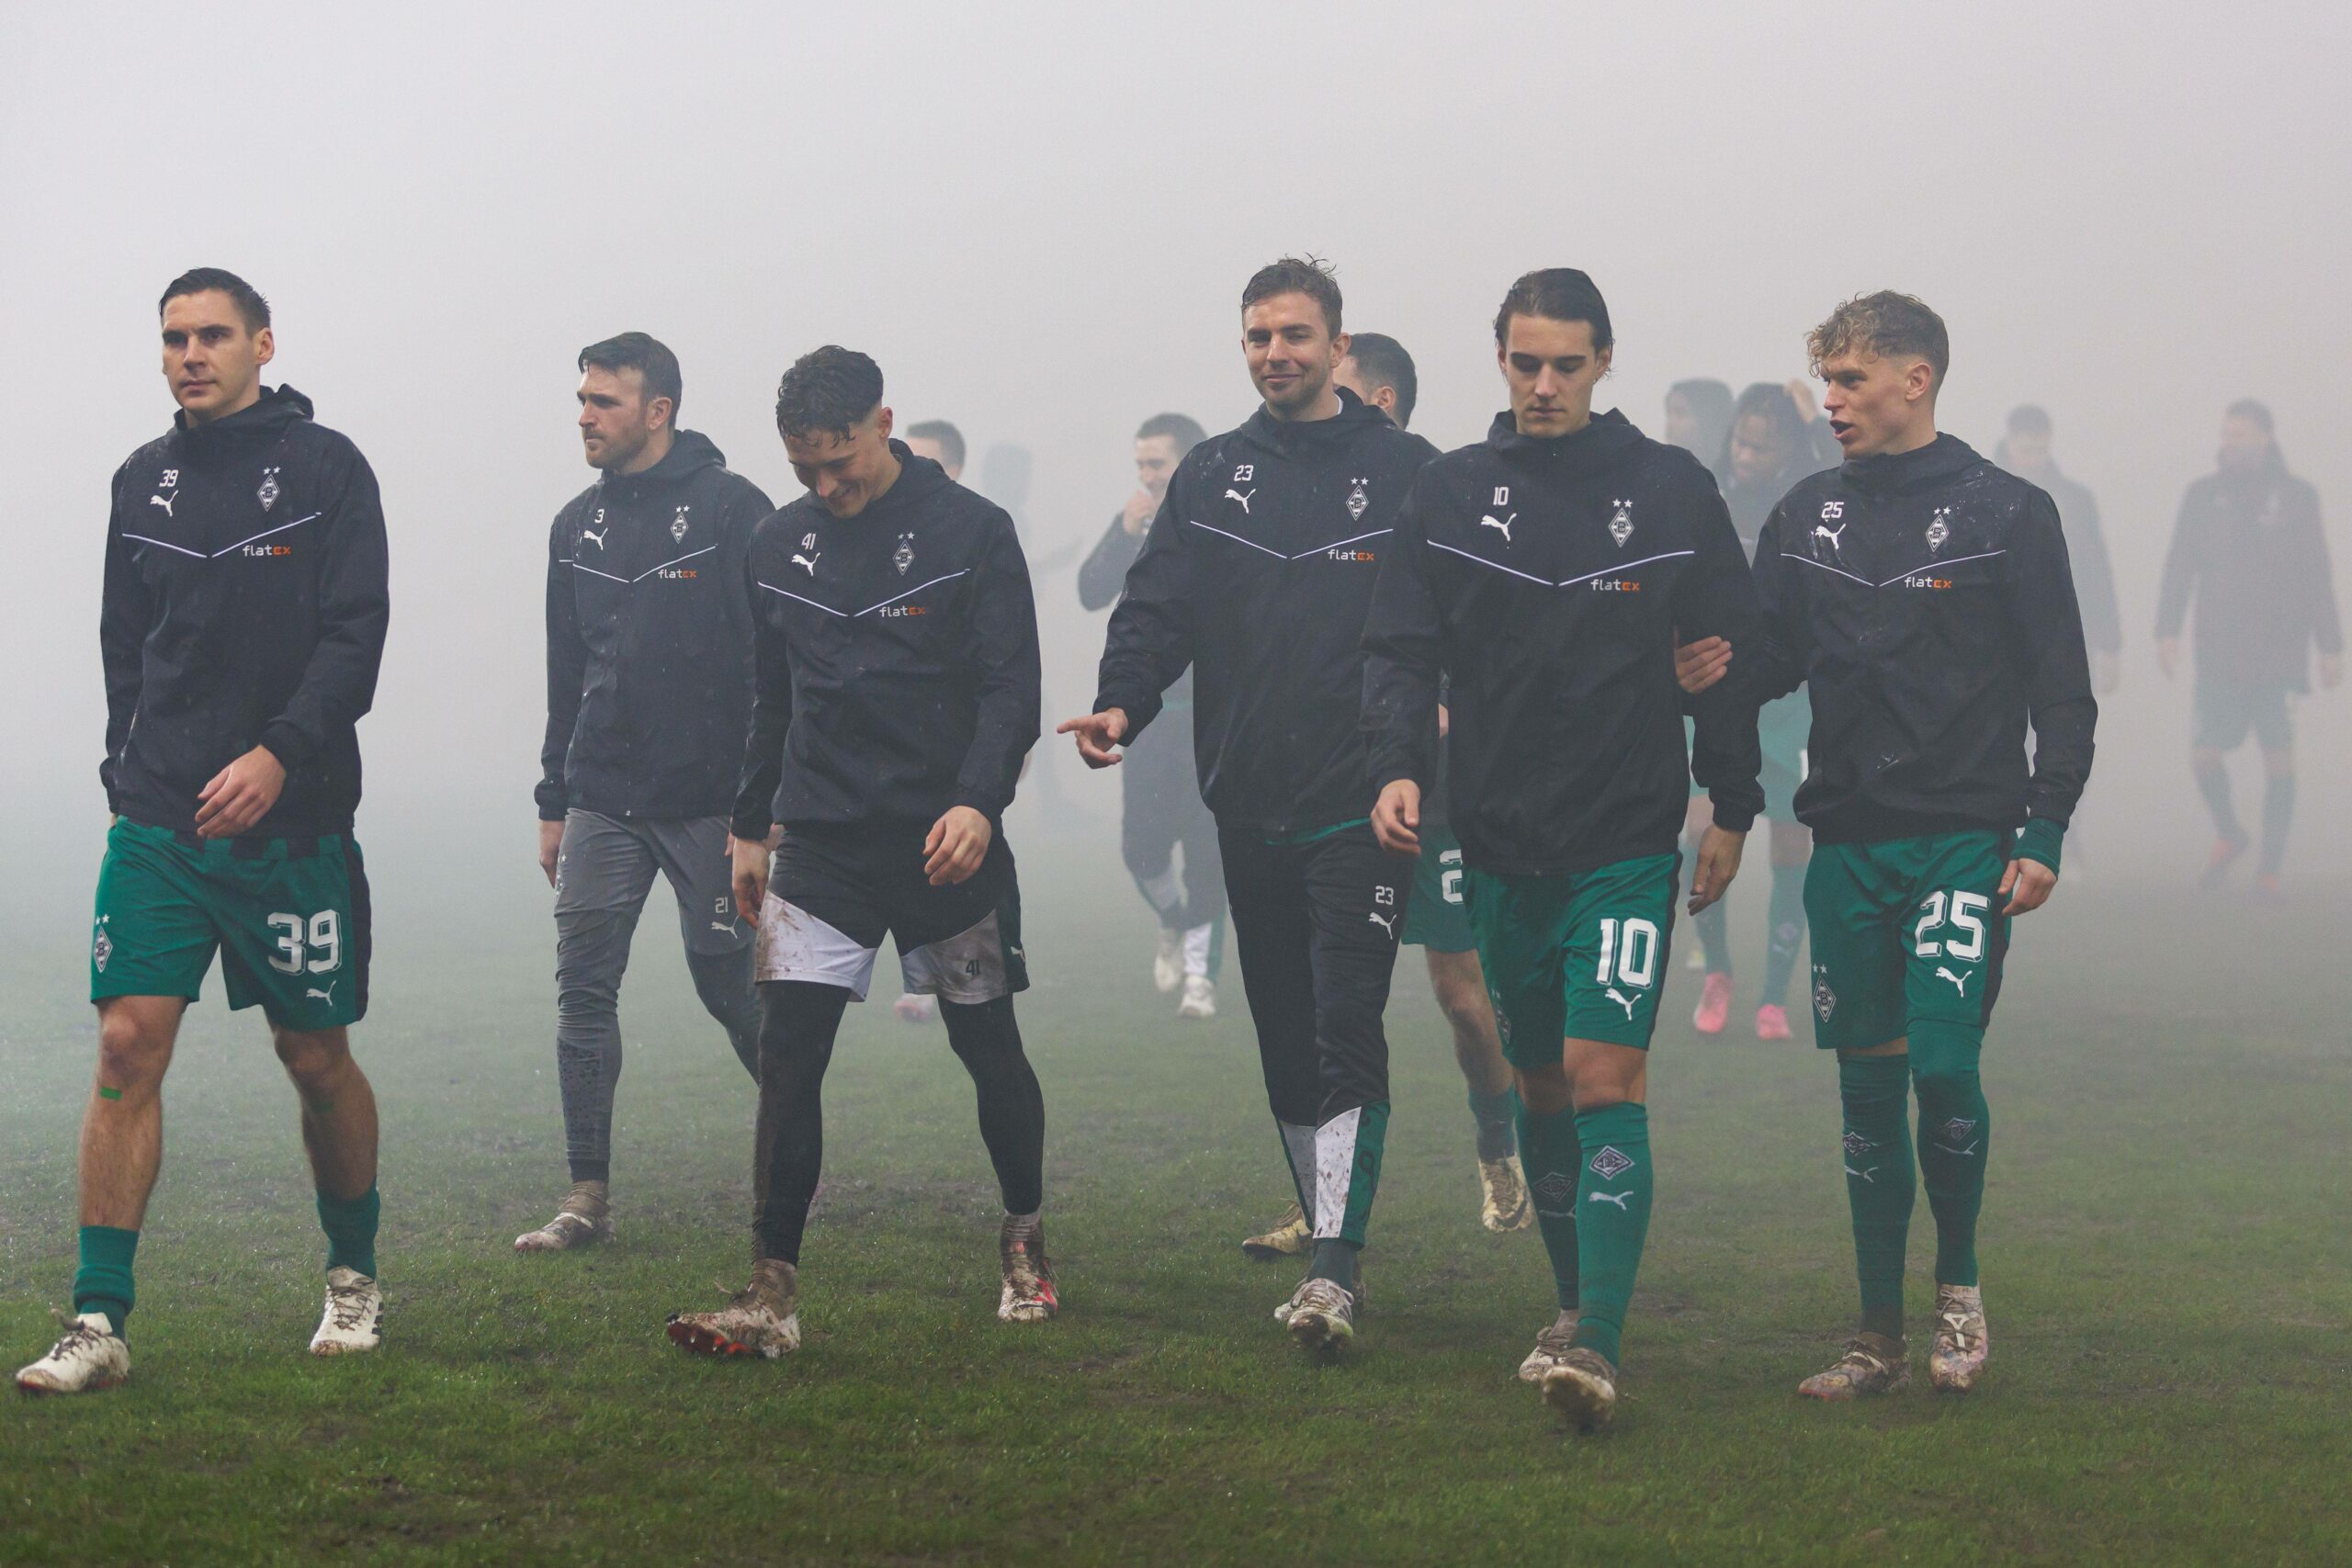 Spieler von Borussia Mönchengladbach verlassen den nassen Rasen in Saarbrücken.